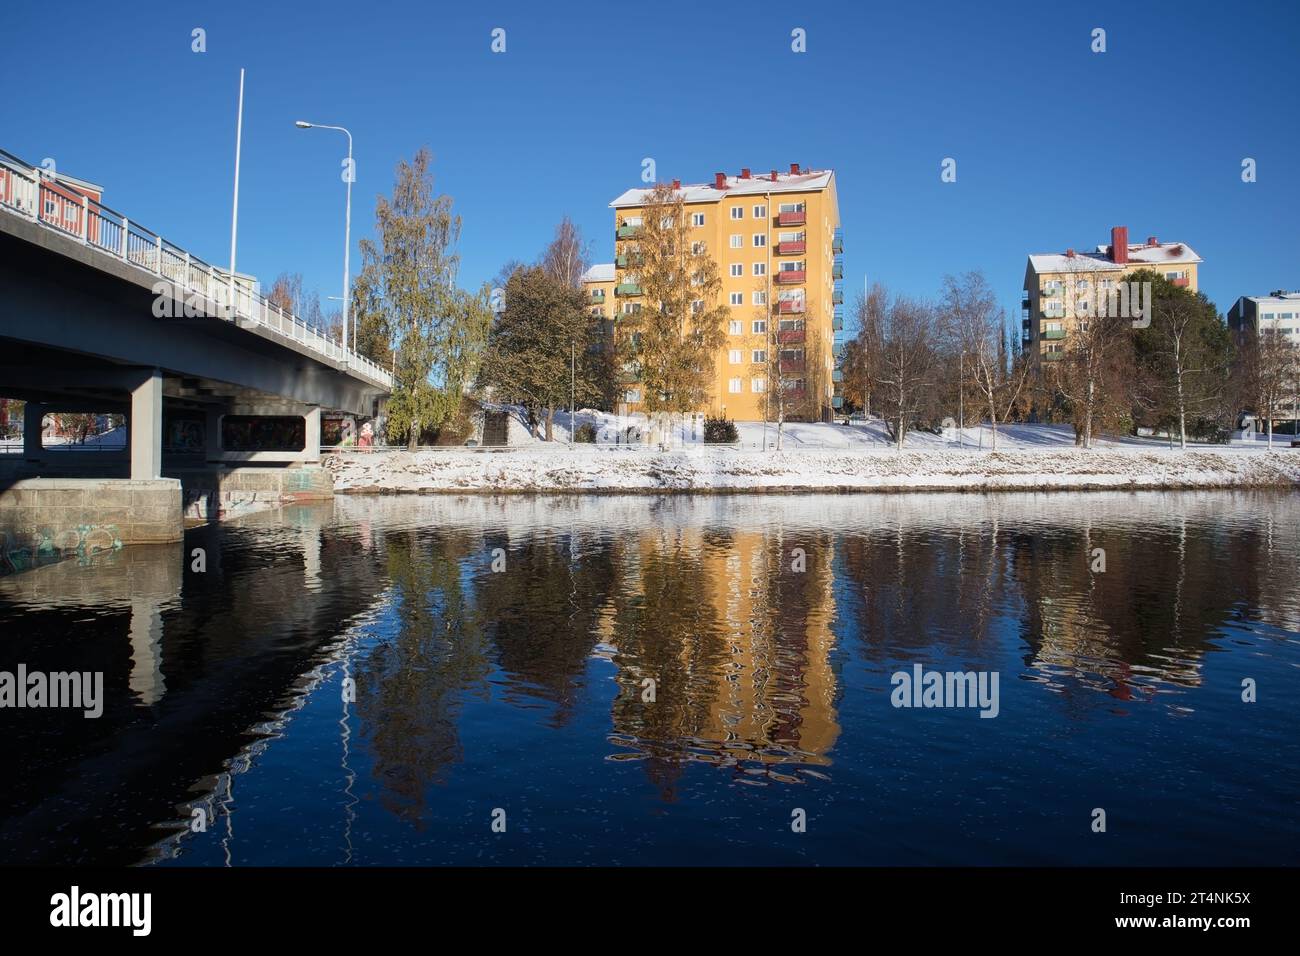 Winter landscape scenery in Oulu, Finland Stock Photo